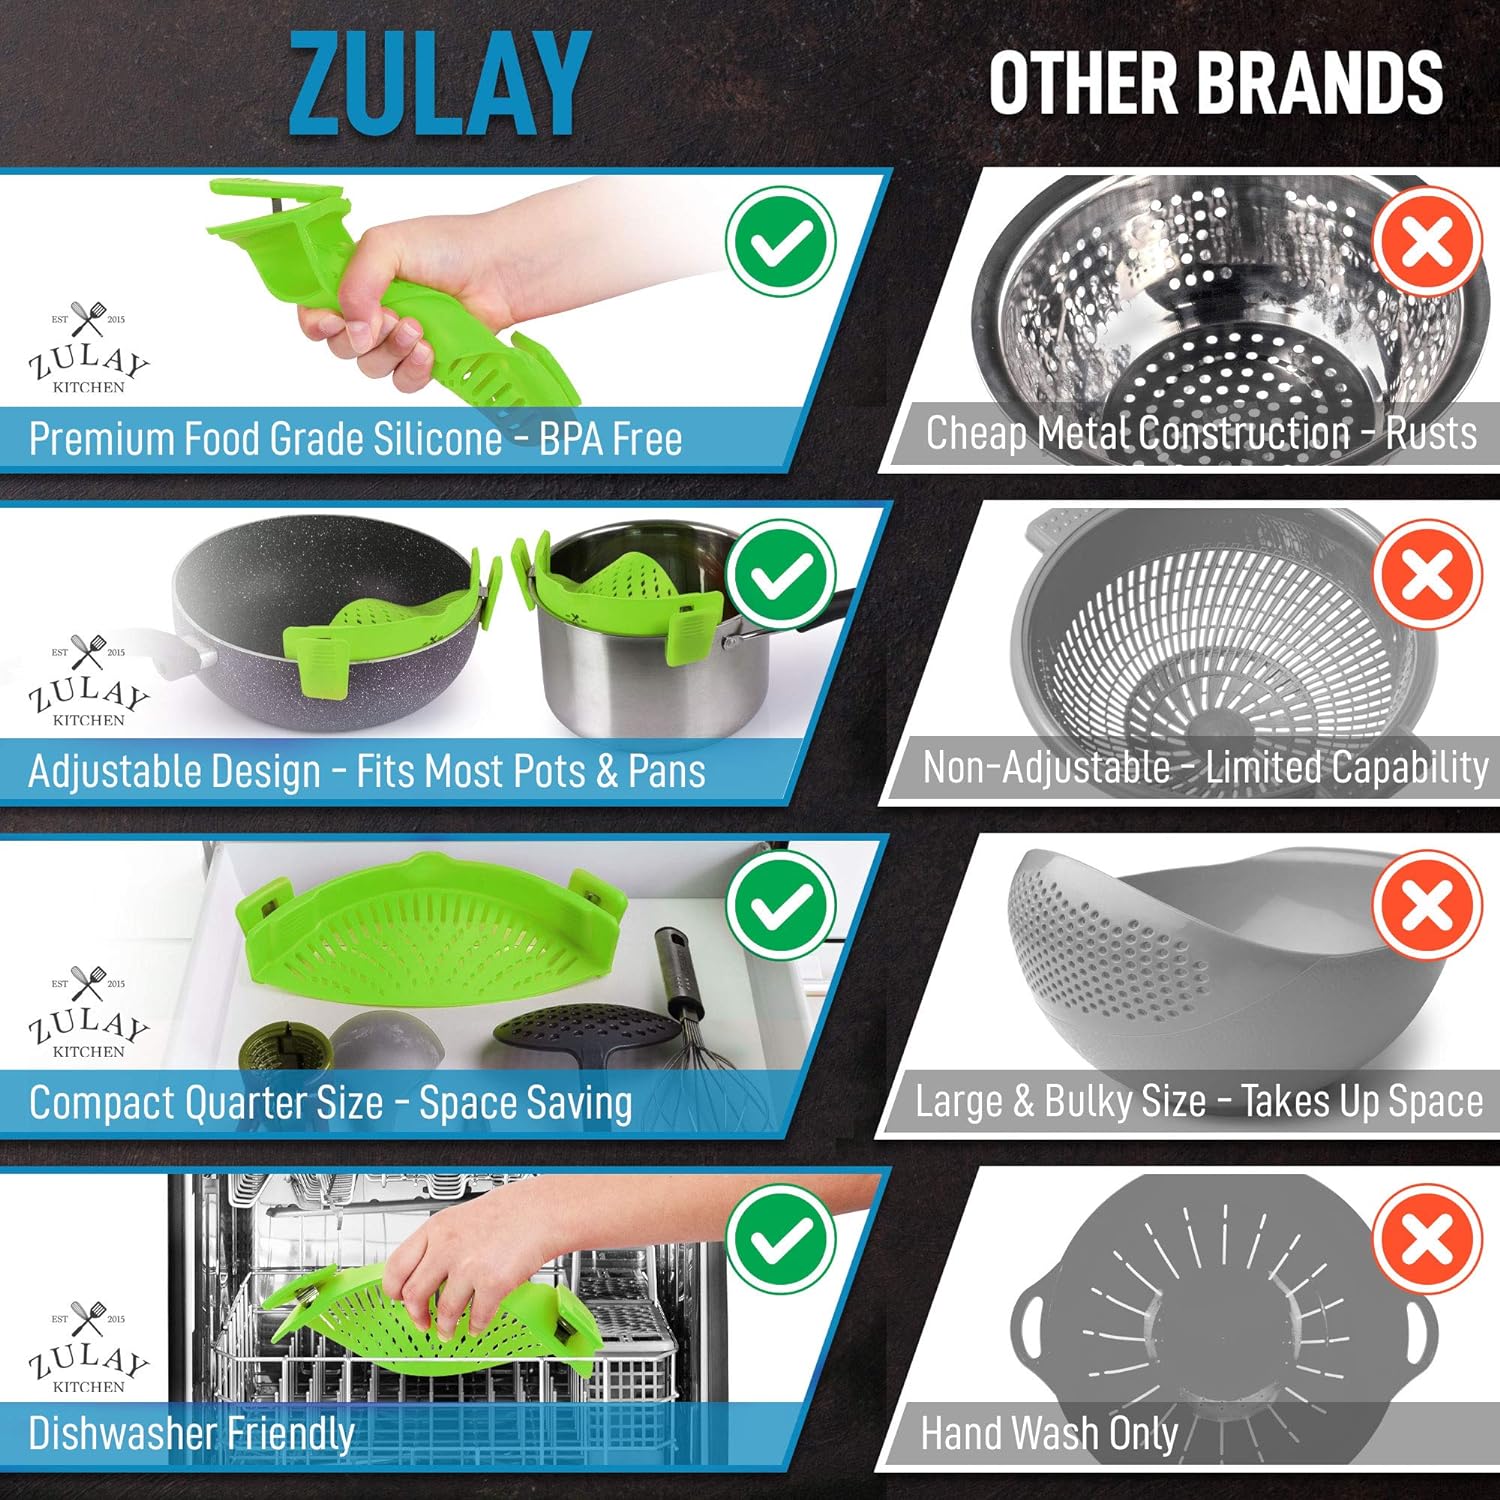 Zulay Kitchen Adjustable Silicone Pot Strainer - Orange